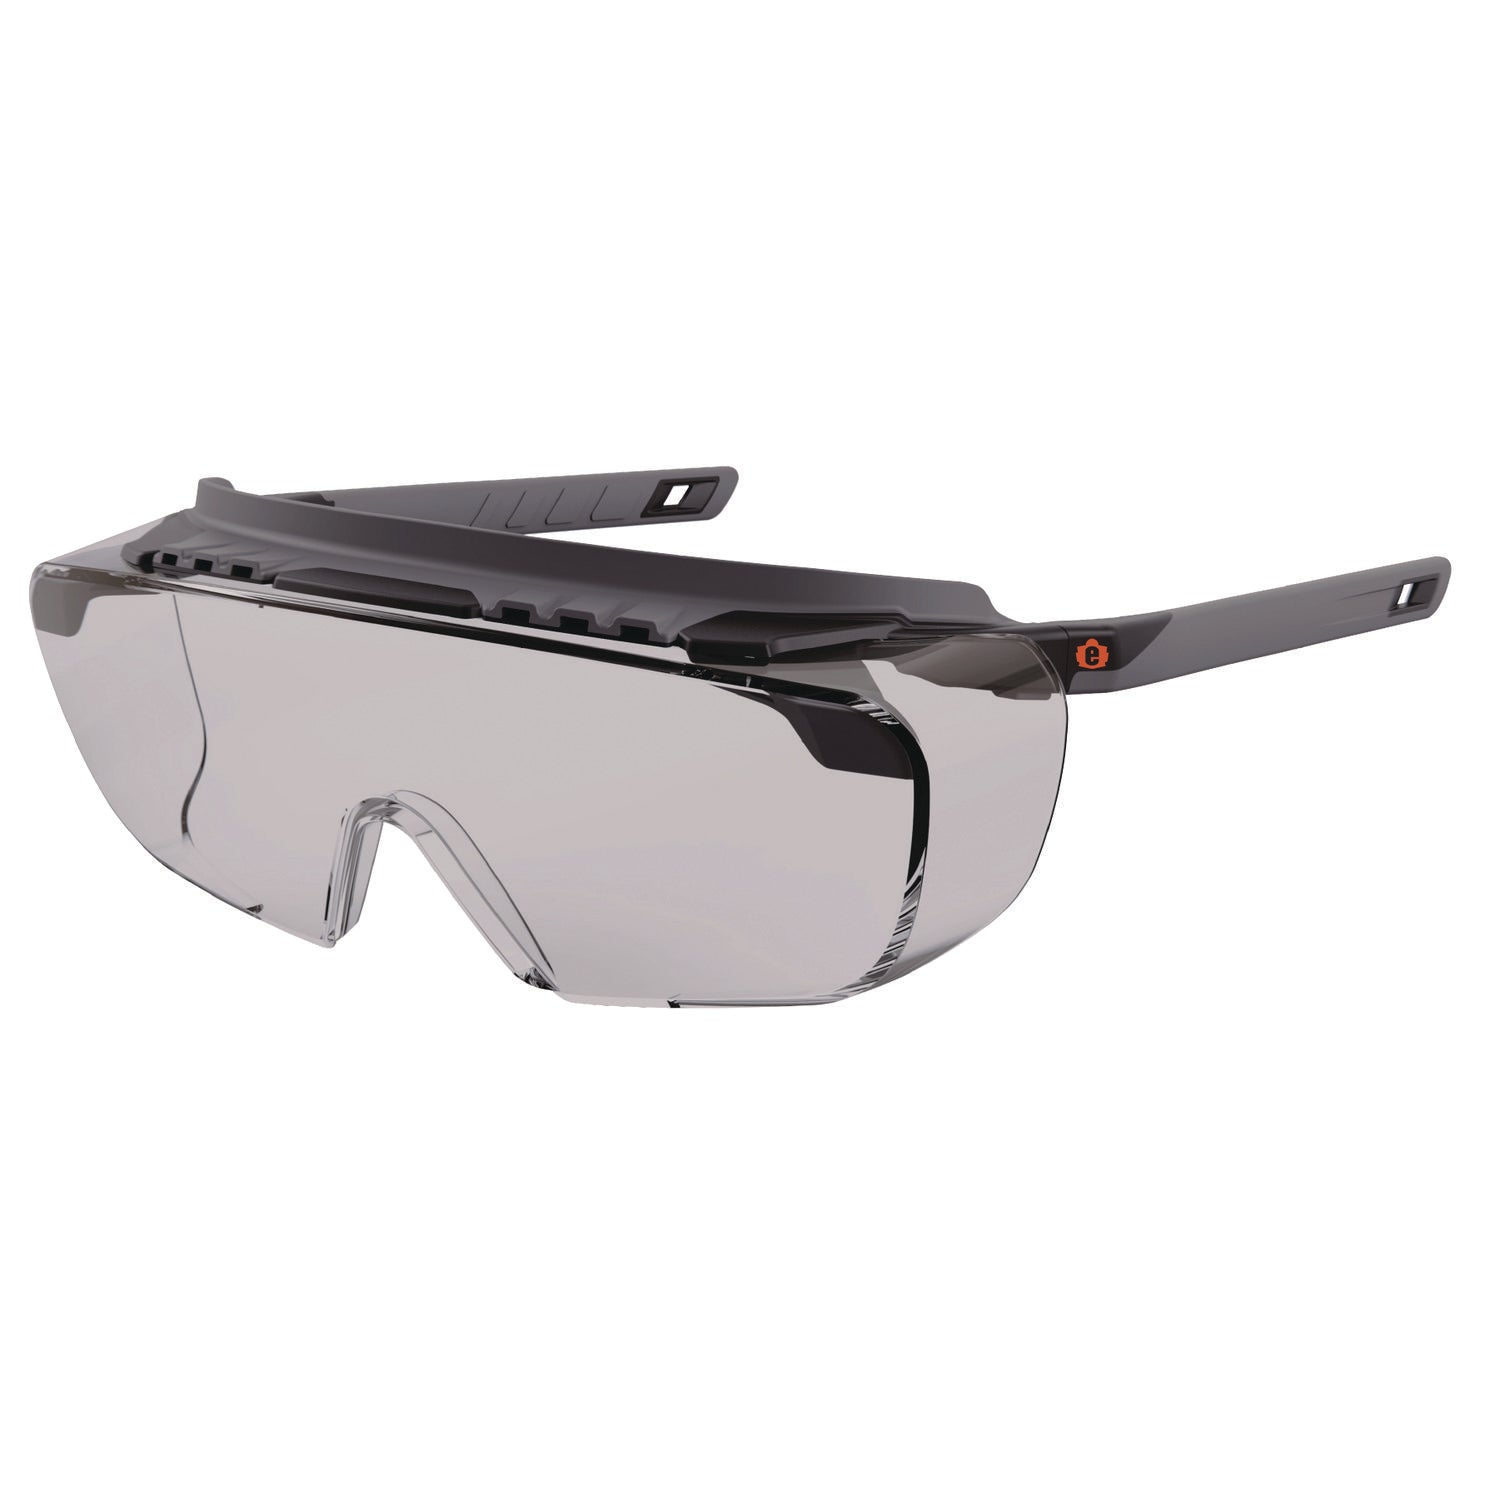 skullerz-osmin-safety-glasses-matte-black-polycarbonate-frame-indoor-outdoor-polycarbonate-lens-ships-in-1-3-business-days_ego55103 - 1